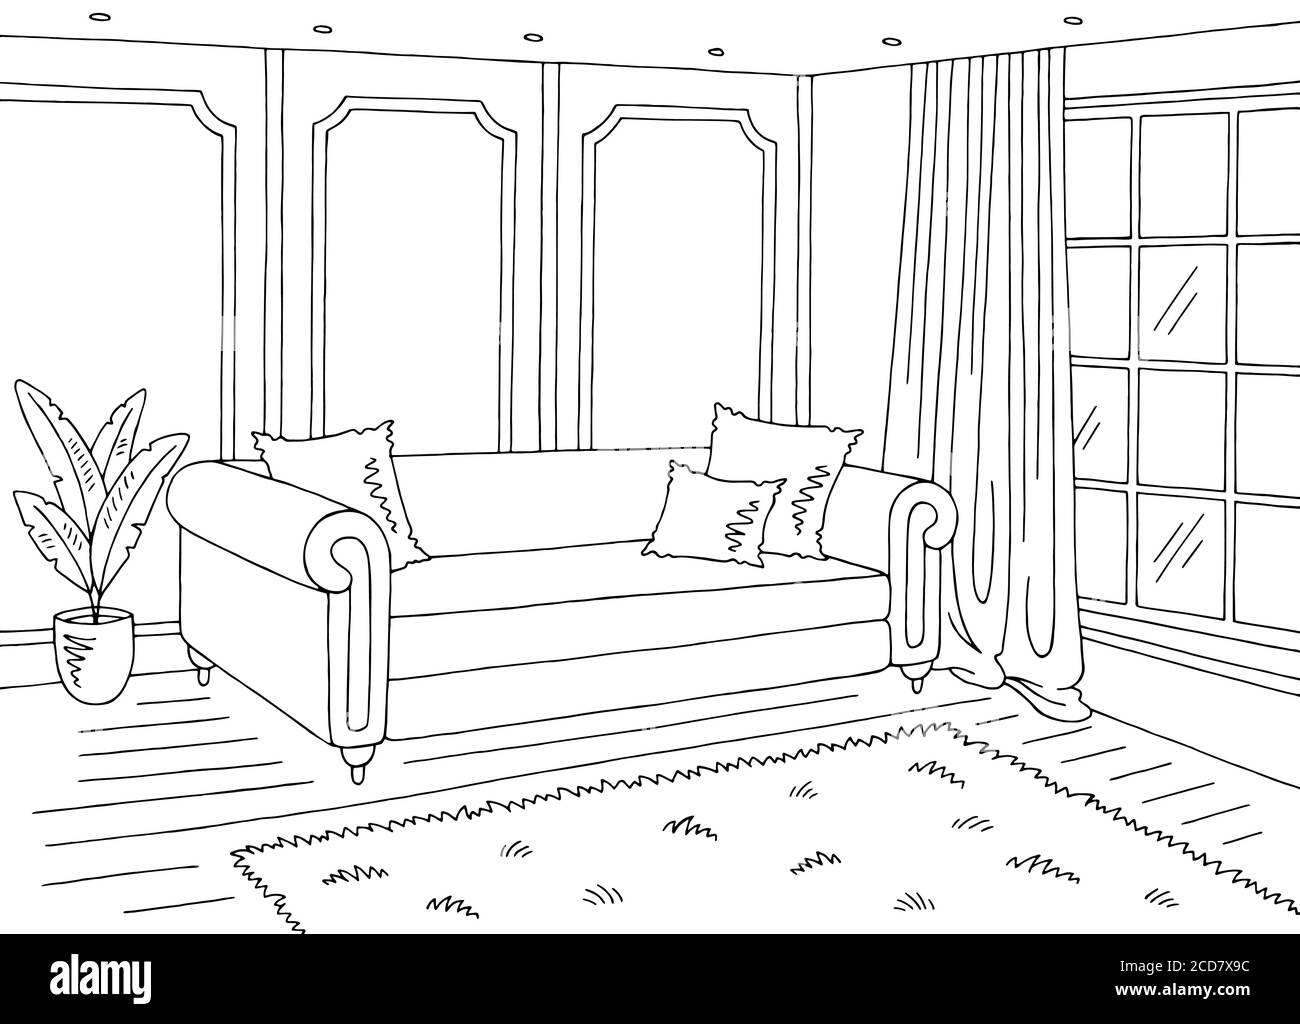 Wohnzimmer Grafik schwarz weiß Hause klassisch Interieur Skizze Illustration vektor Stock Vektor